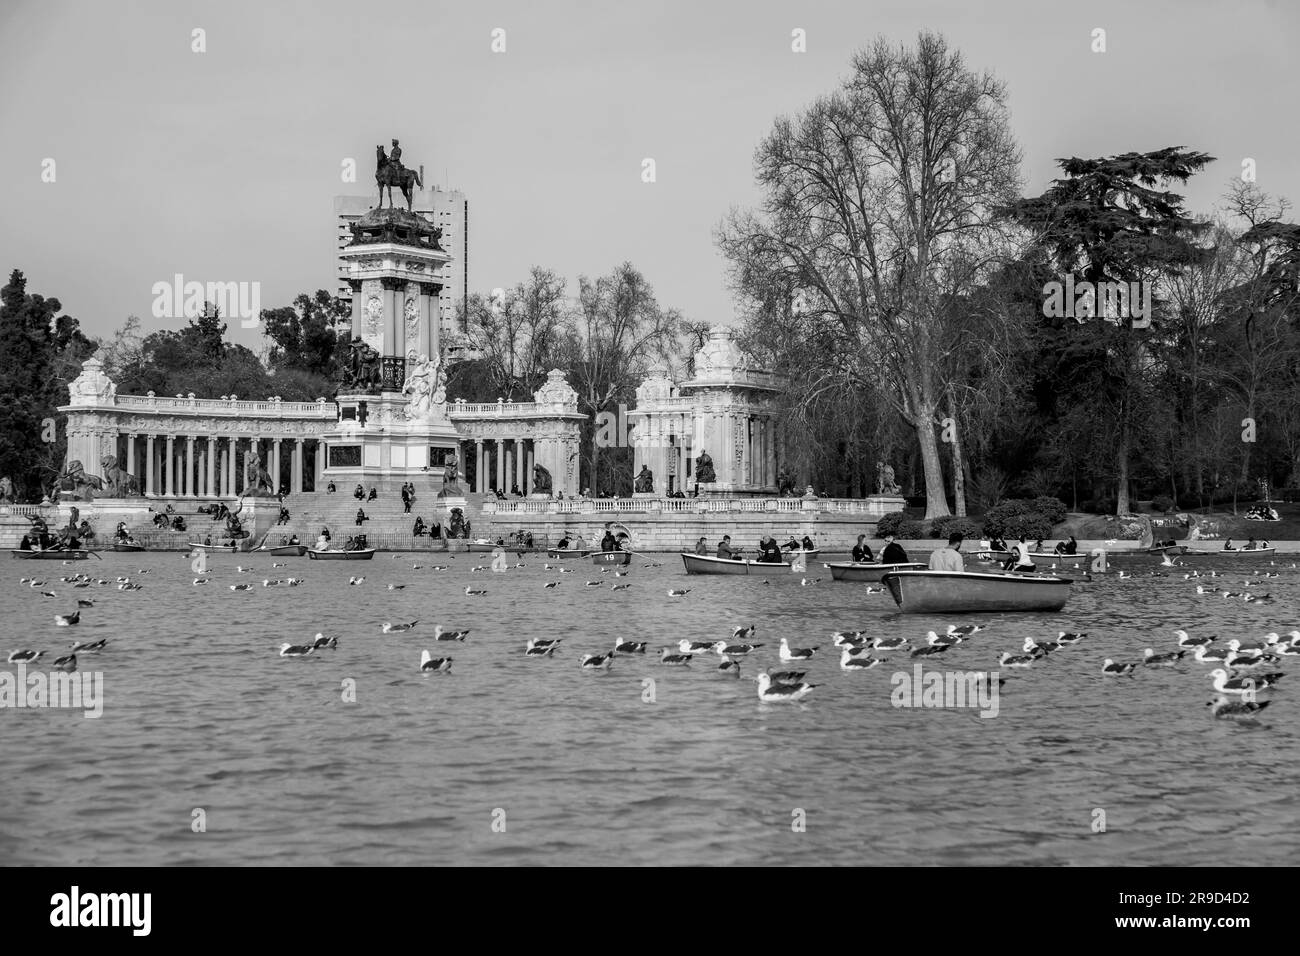 Madrid, Espagne - 16 FÉVRIER 2022: Les gens s'amusent sur les bateaux à rames sur l'étang à l'intérieur du parc Buen Retiro à Madrid, Espagne. Banque D'Images